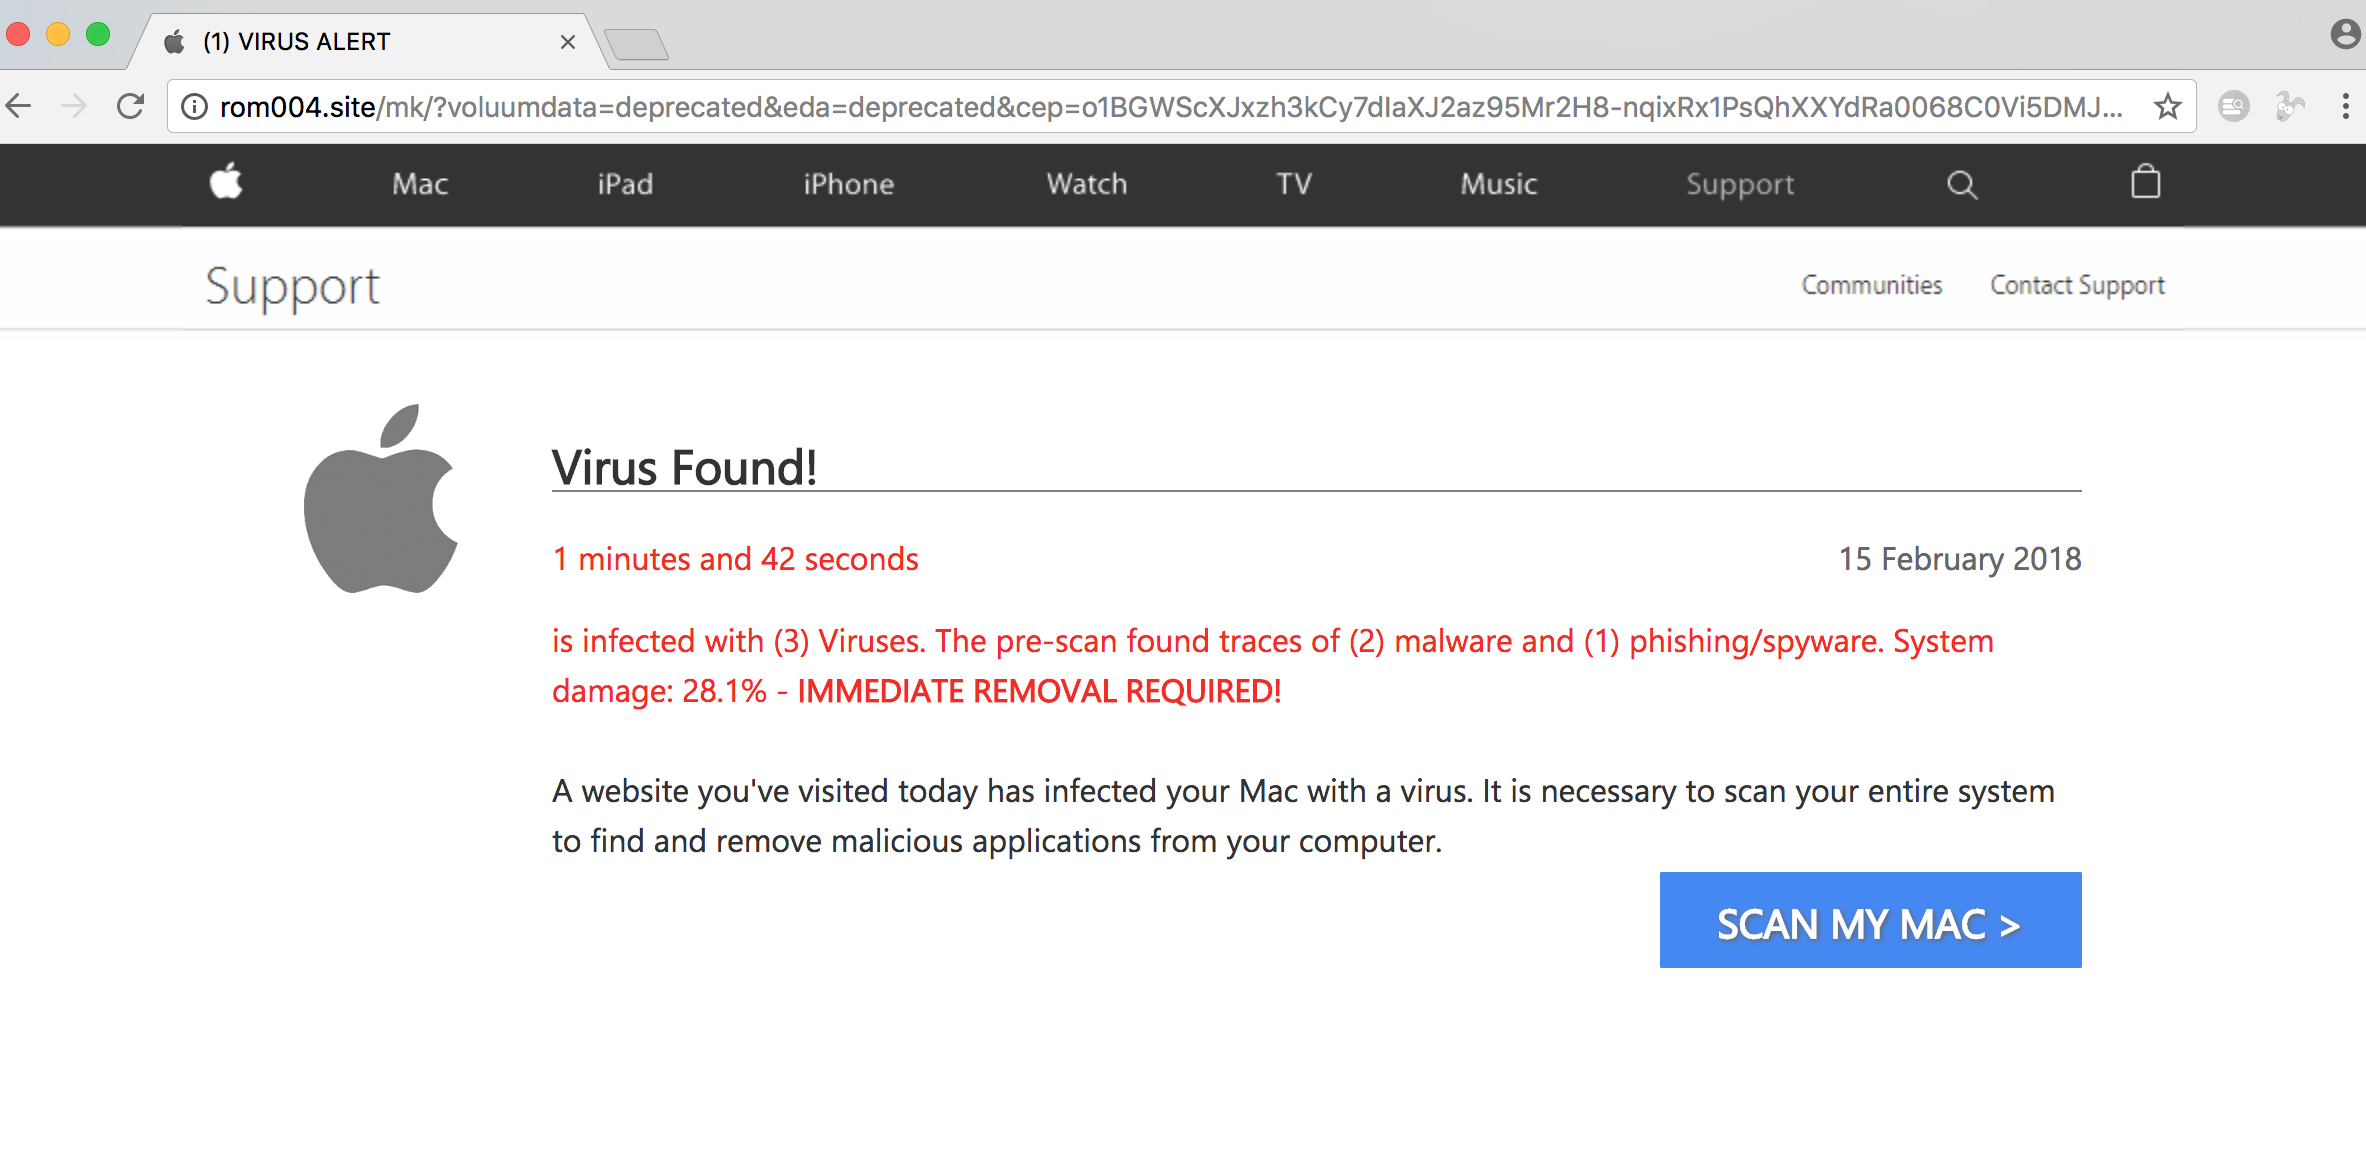 rom004.site (1) Virus Alert scam on Mac